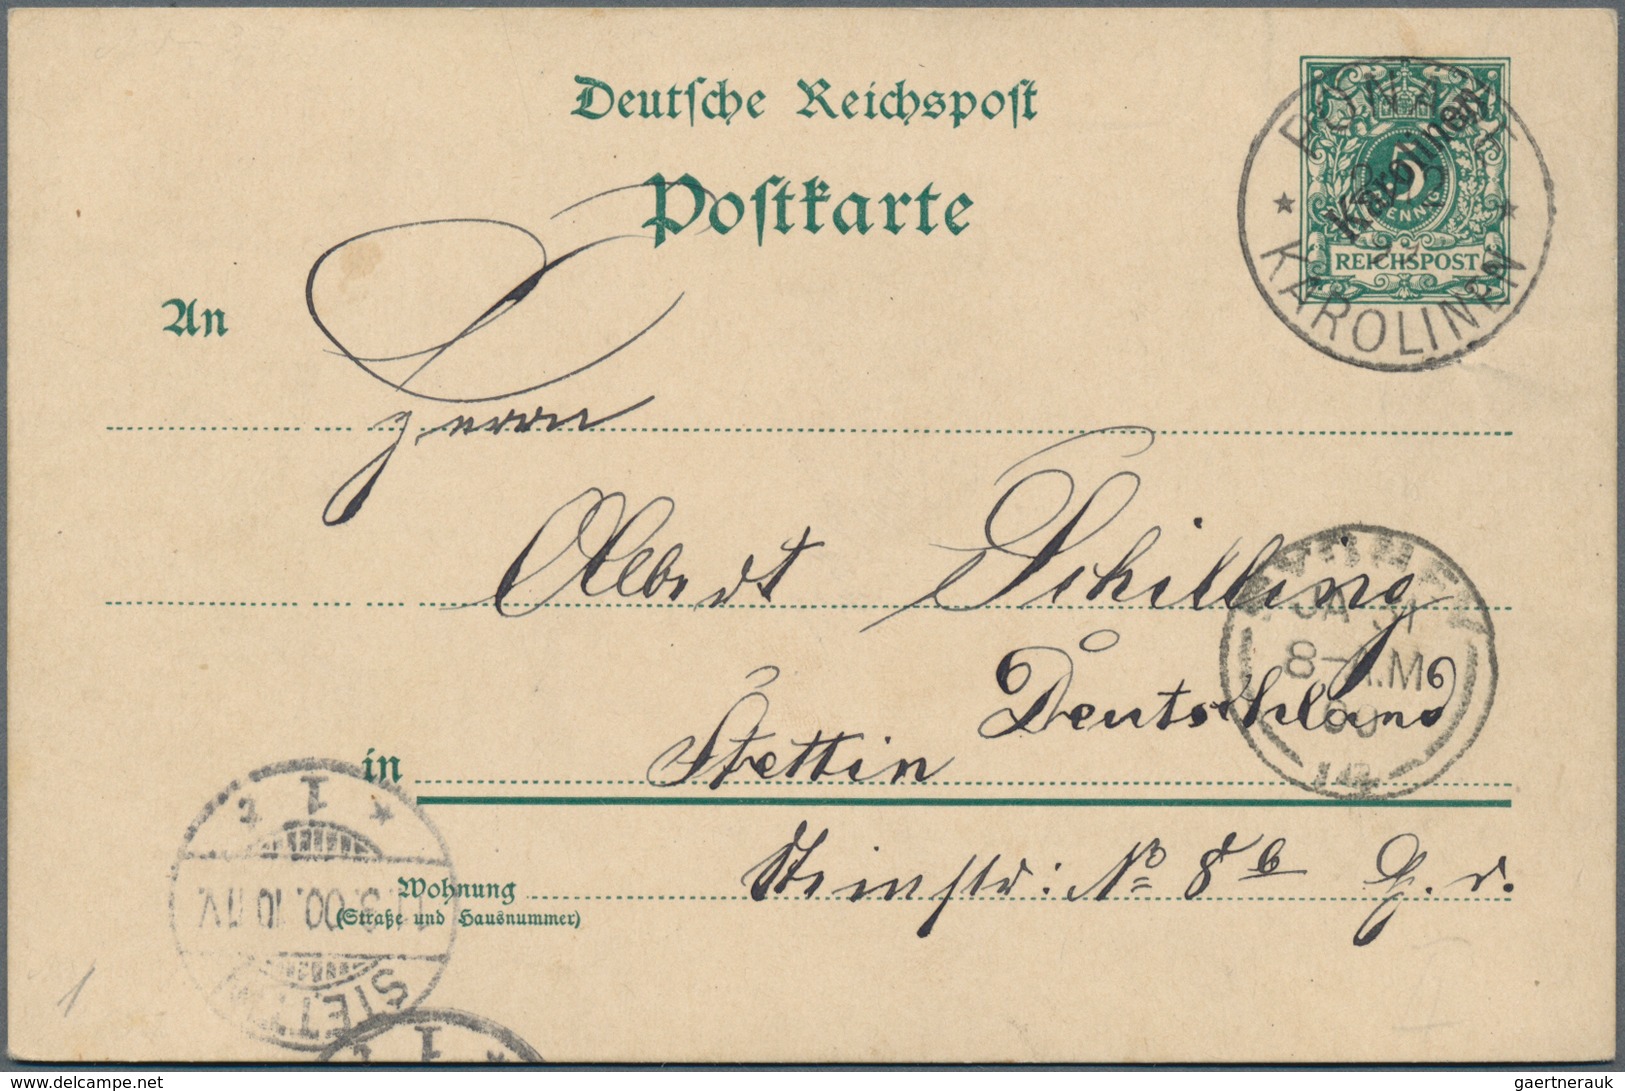 Deutsche Kolonien - Karolinen - Ganzsachen: 1899, Bedarfs- Und Portogerecht Gebrauchte Ganzsachenkar - Karolinen